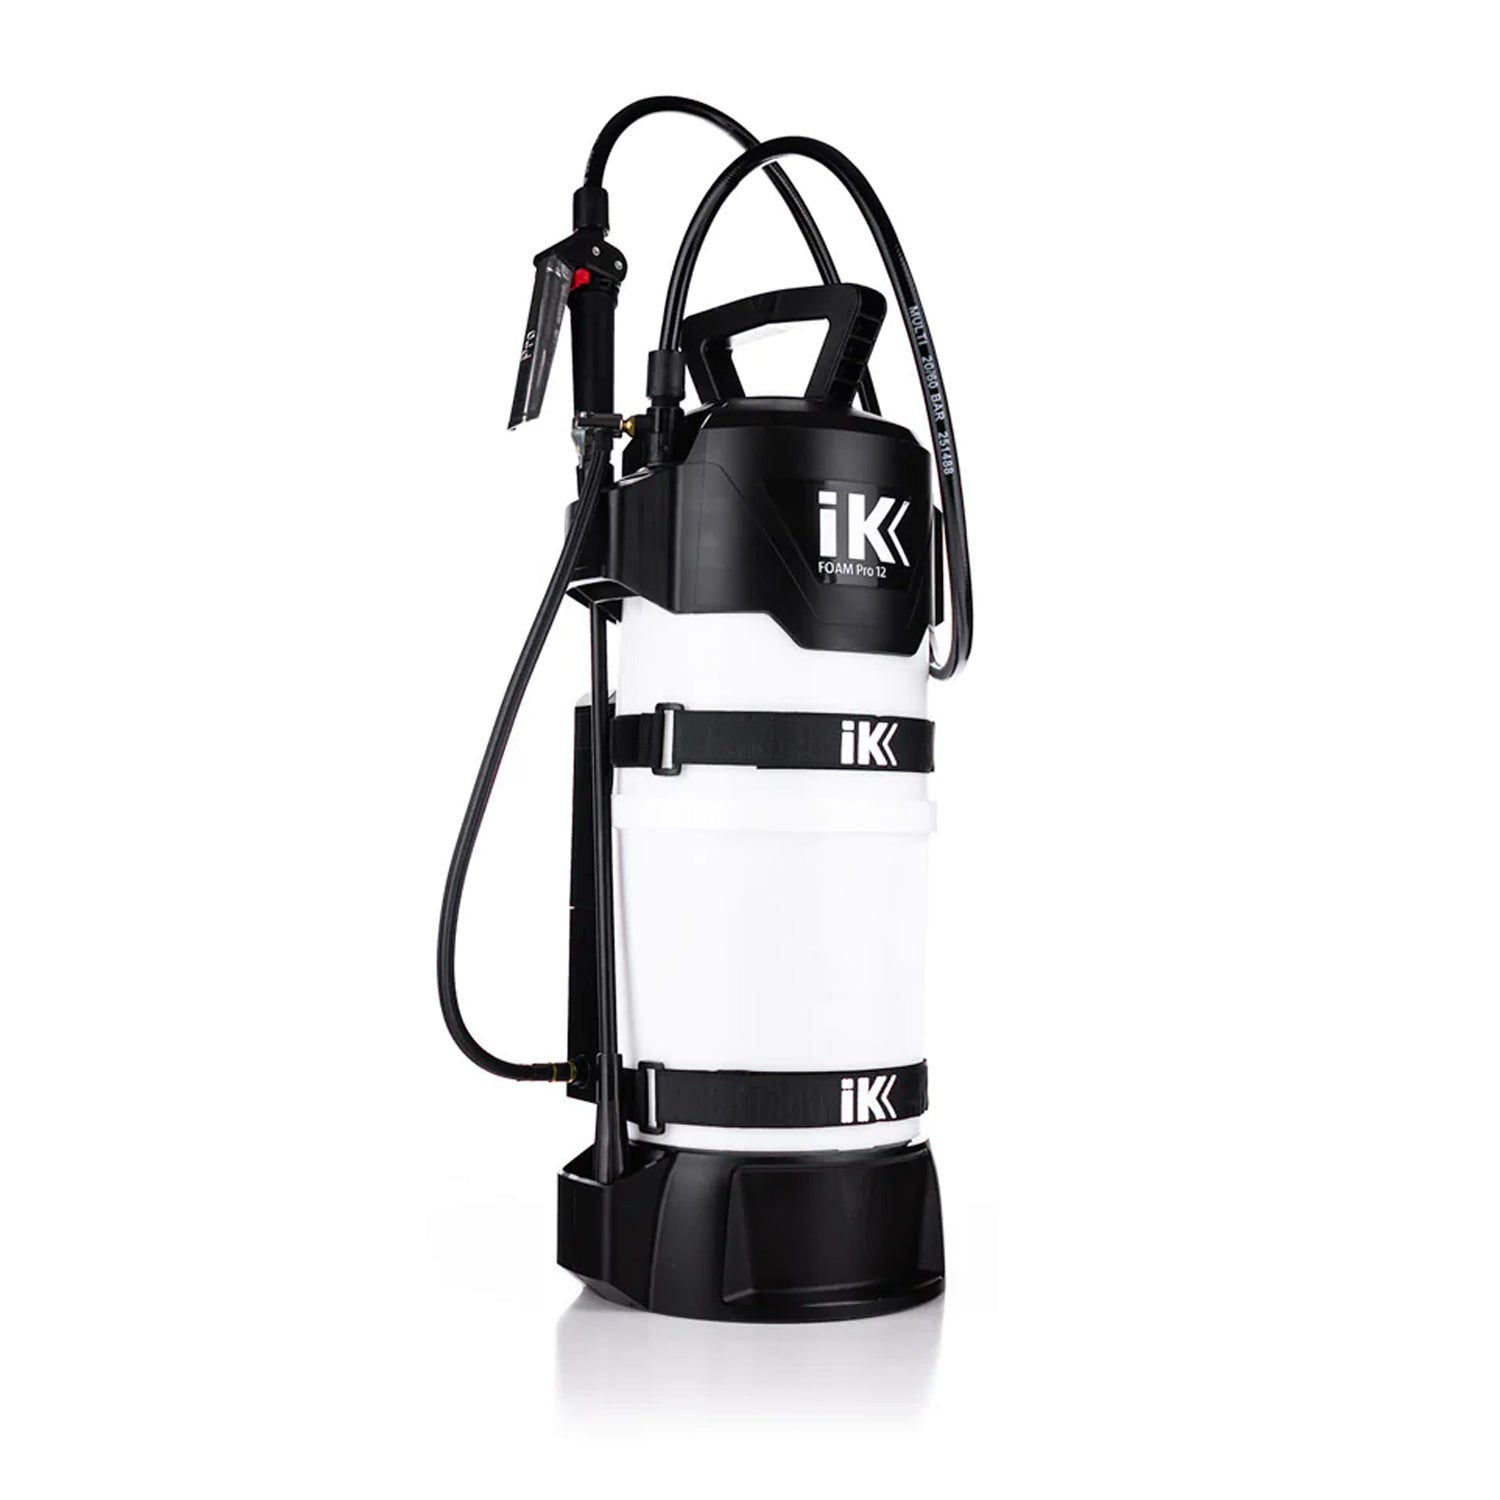 IK E-Foam Pro 12+ Sprayer